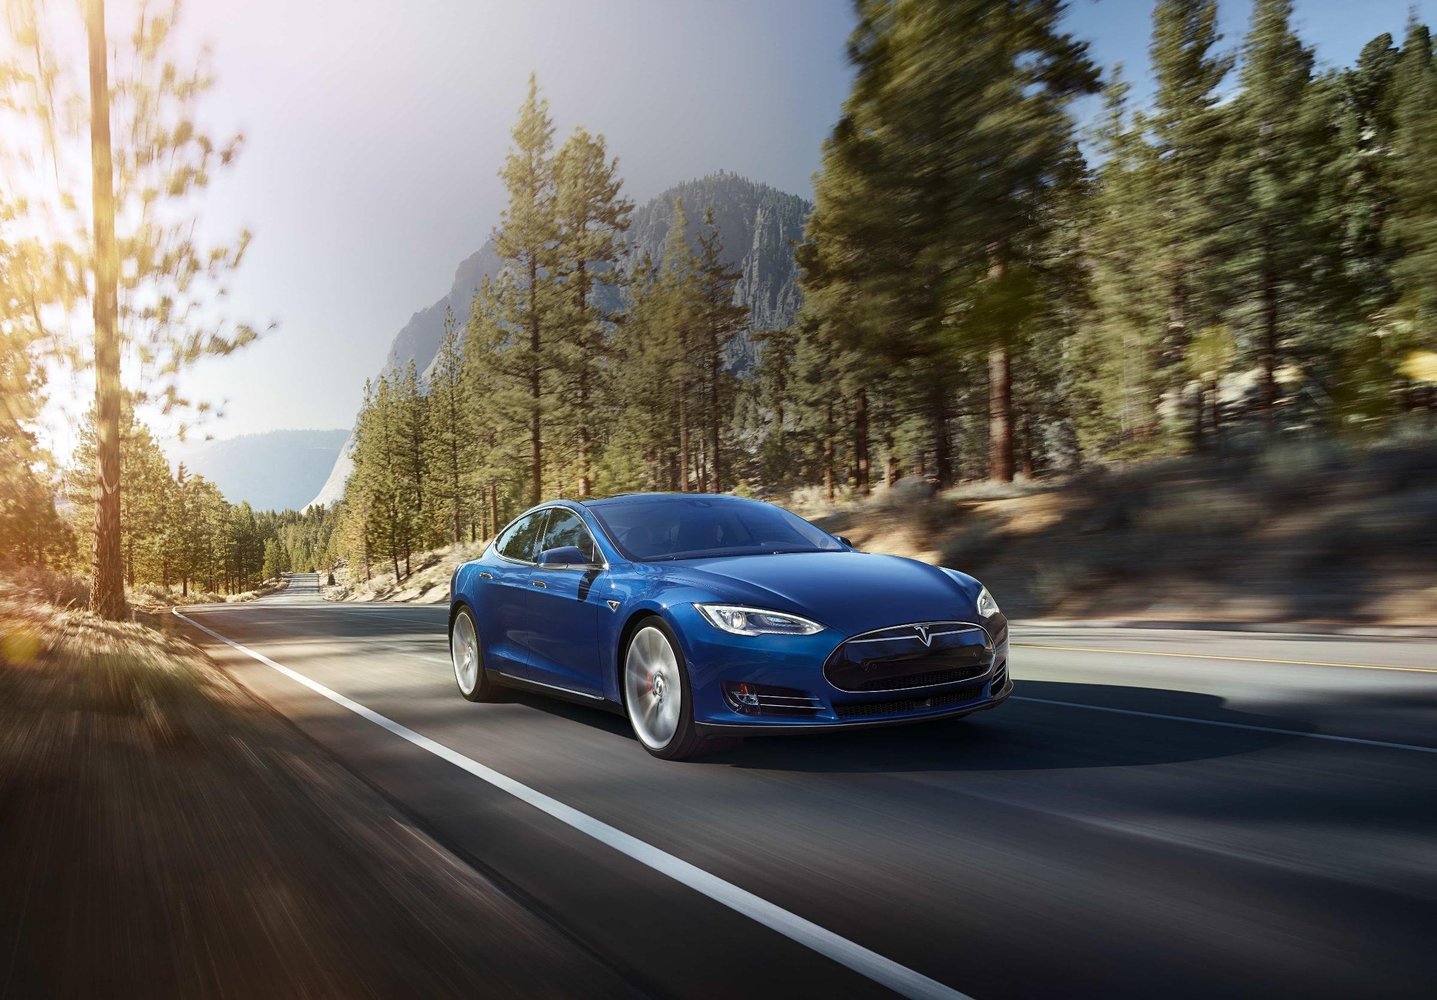 хэтчбек 5 дв. Tesla Model S 2012 - 2016г выпуска модификация Комплектация